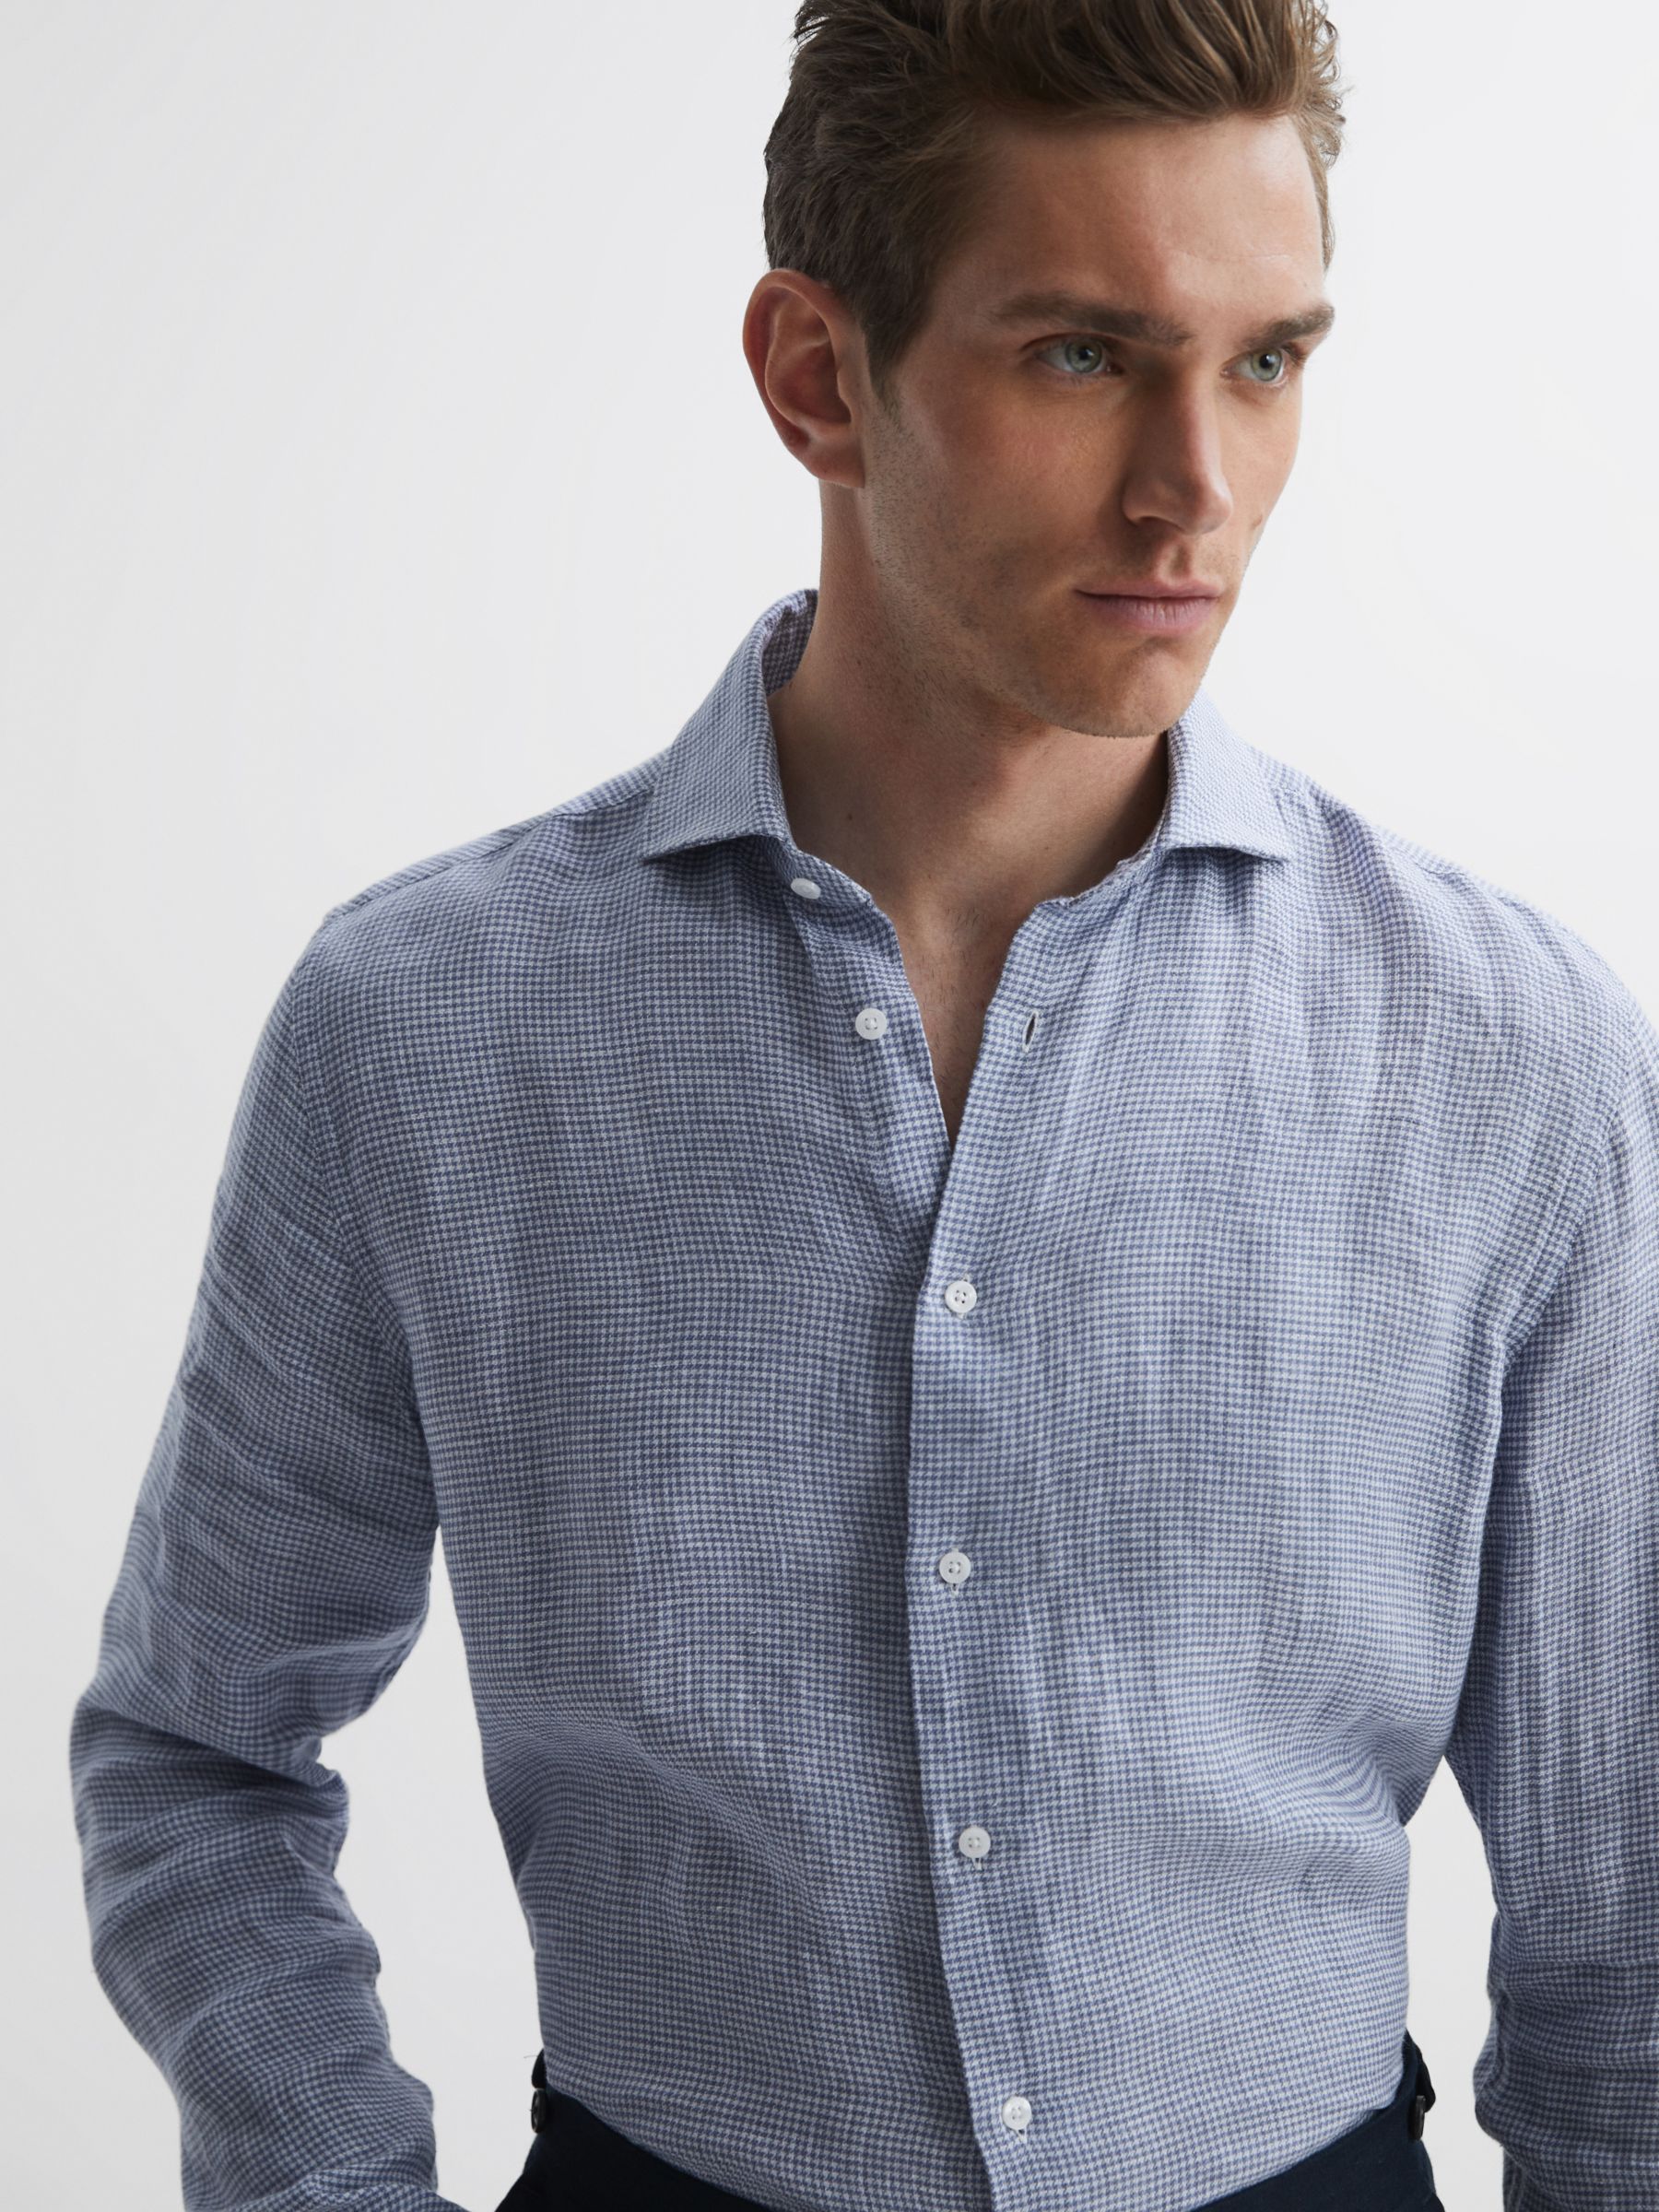 Reiss Ruban Gingham Check Linen Shirt, Blue at John Lewis & Partners